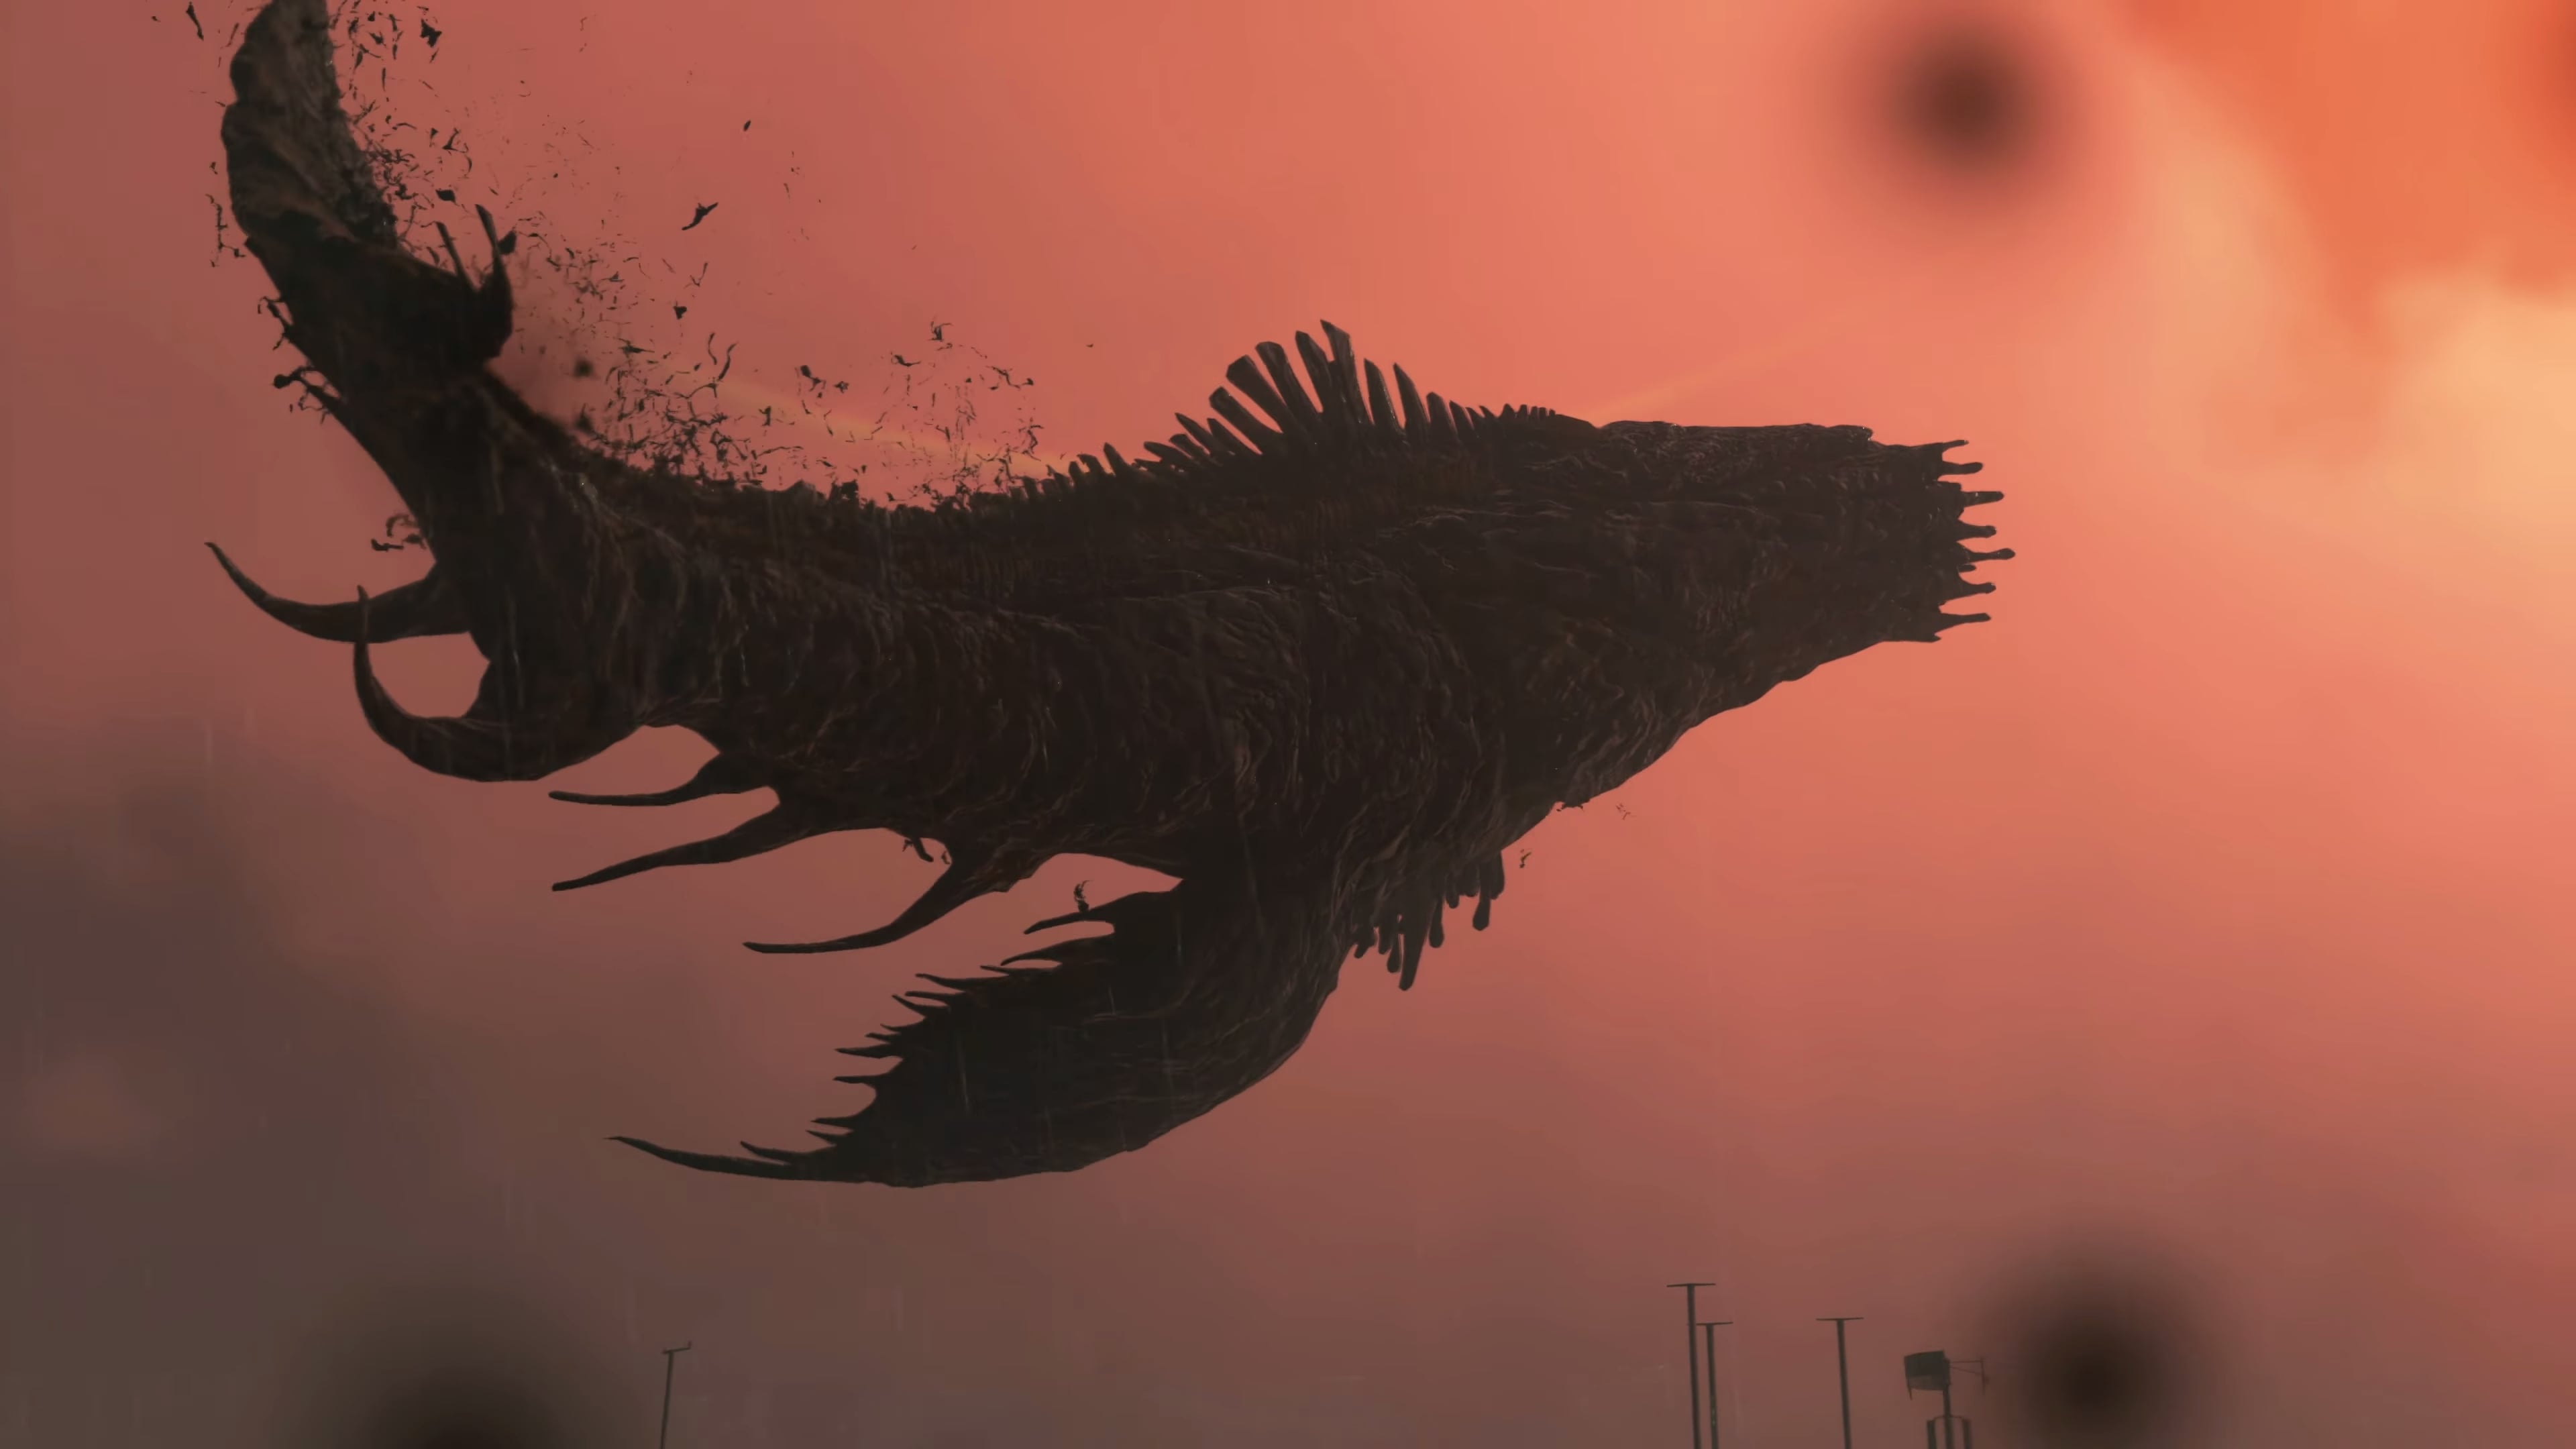 Troy Baker Summons Oil Monsters in Death Stranding - Hardcore Gamer